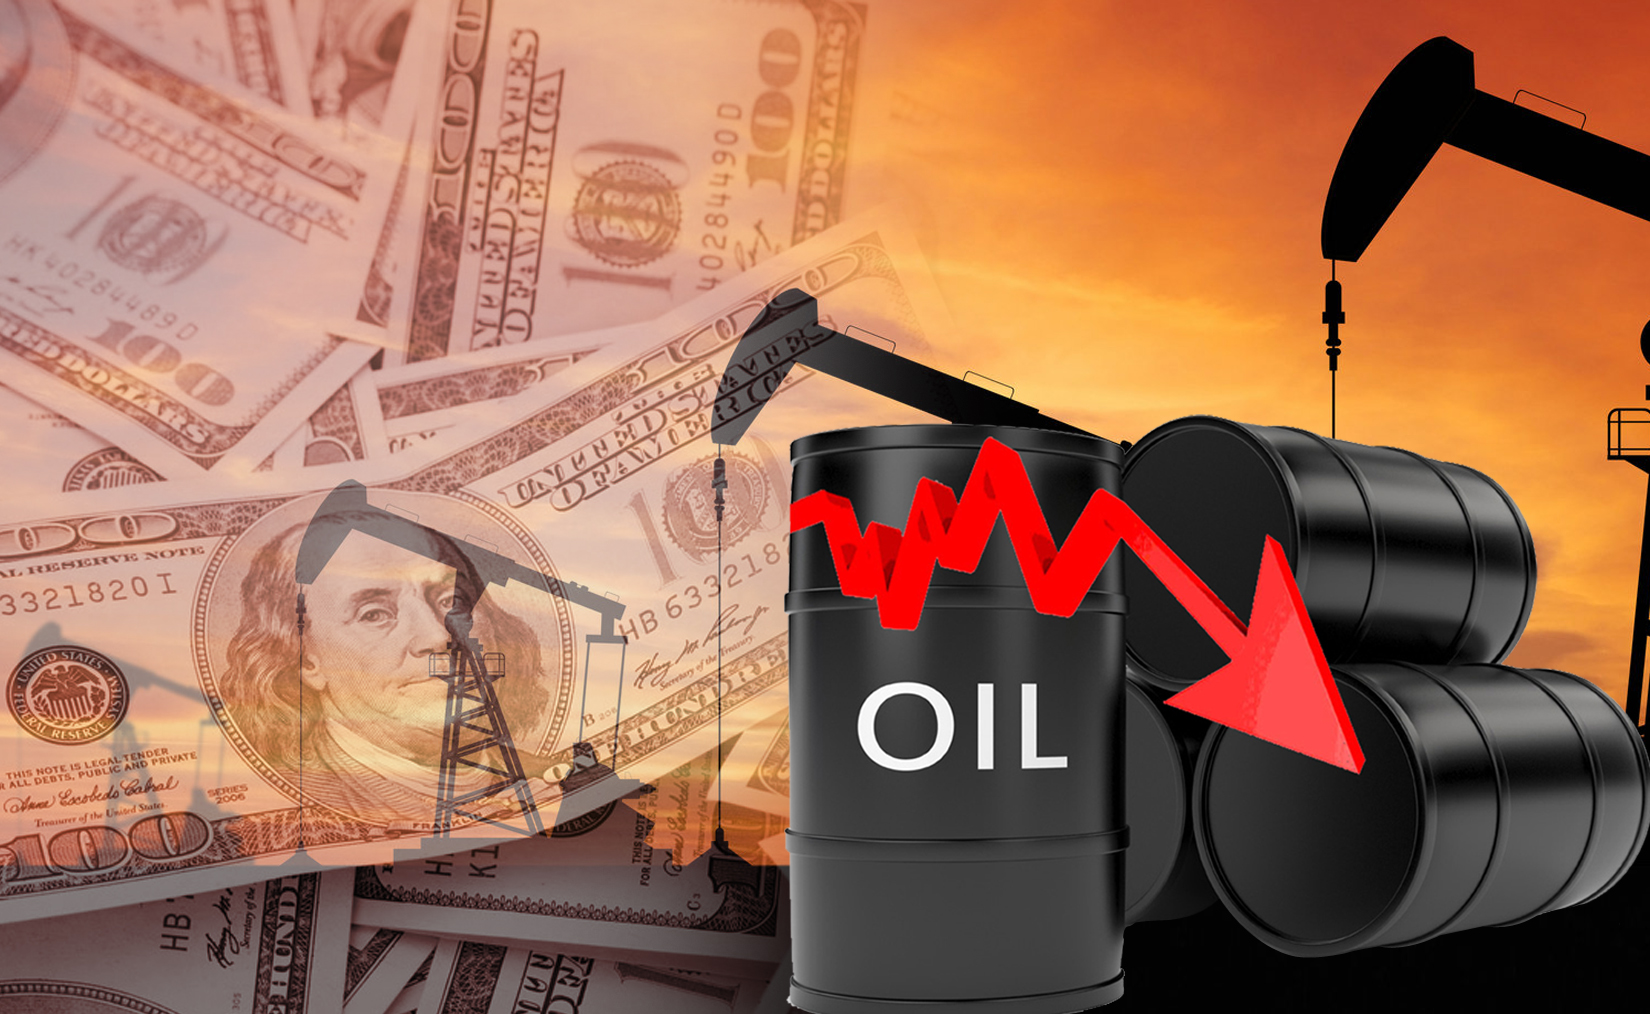 النفط الكويتي ينخفض إلى 26.47 دولارا للبرميل